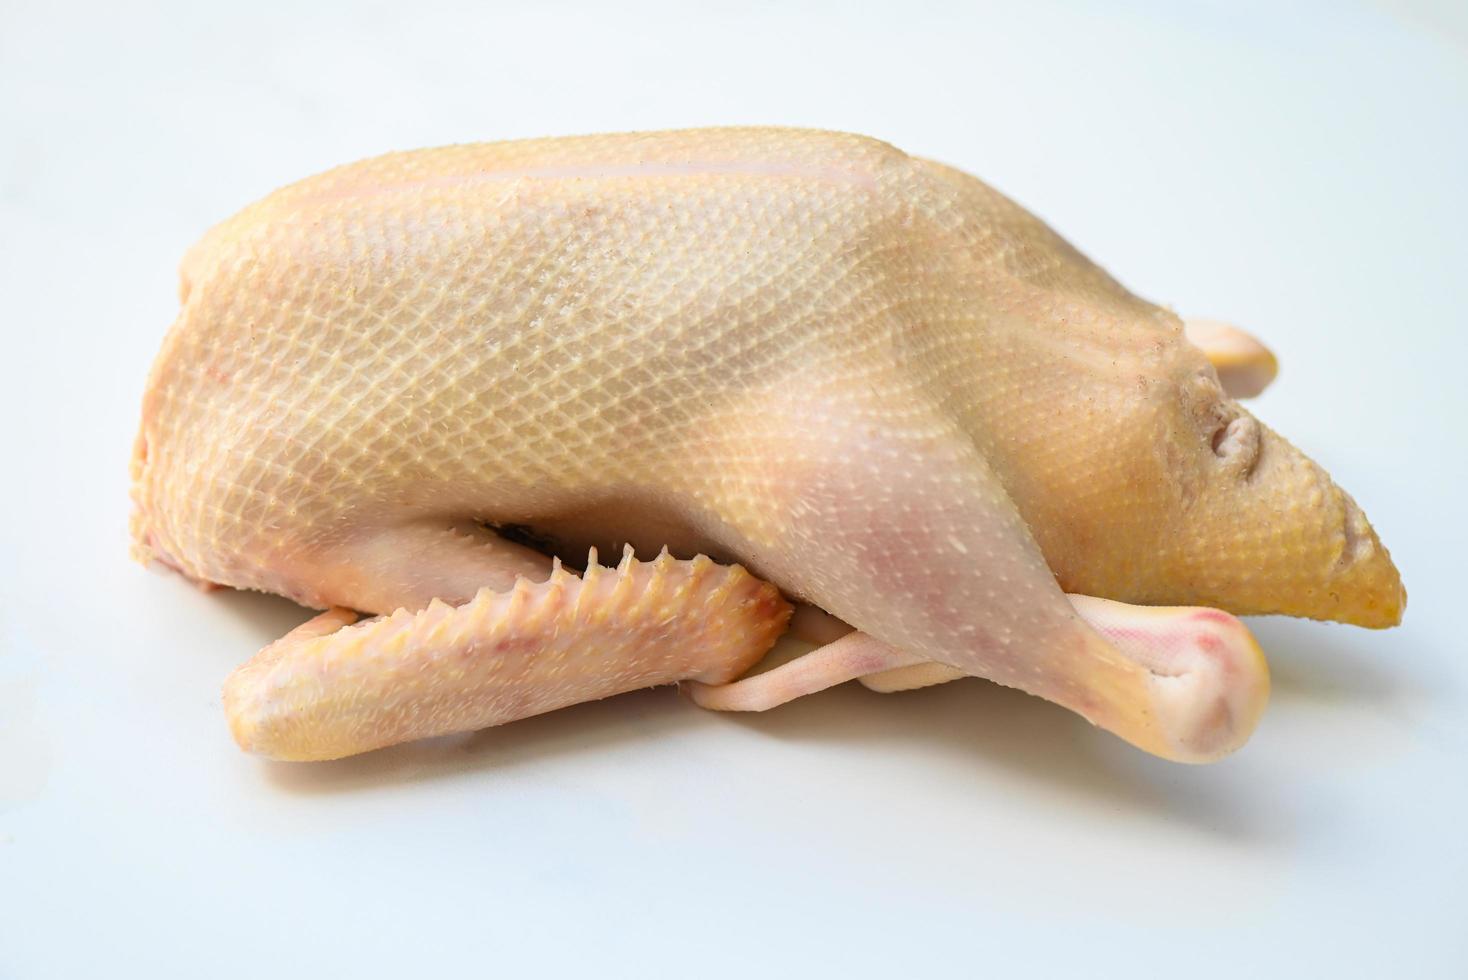 canard cru sur fond blanc gris, viande de canard fraîche pour la nourriture, canard entier sur assiette photo